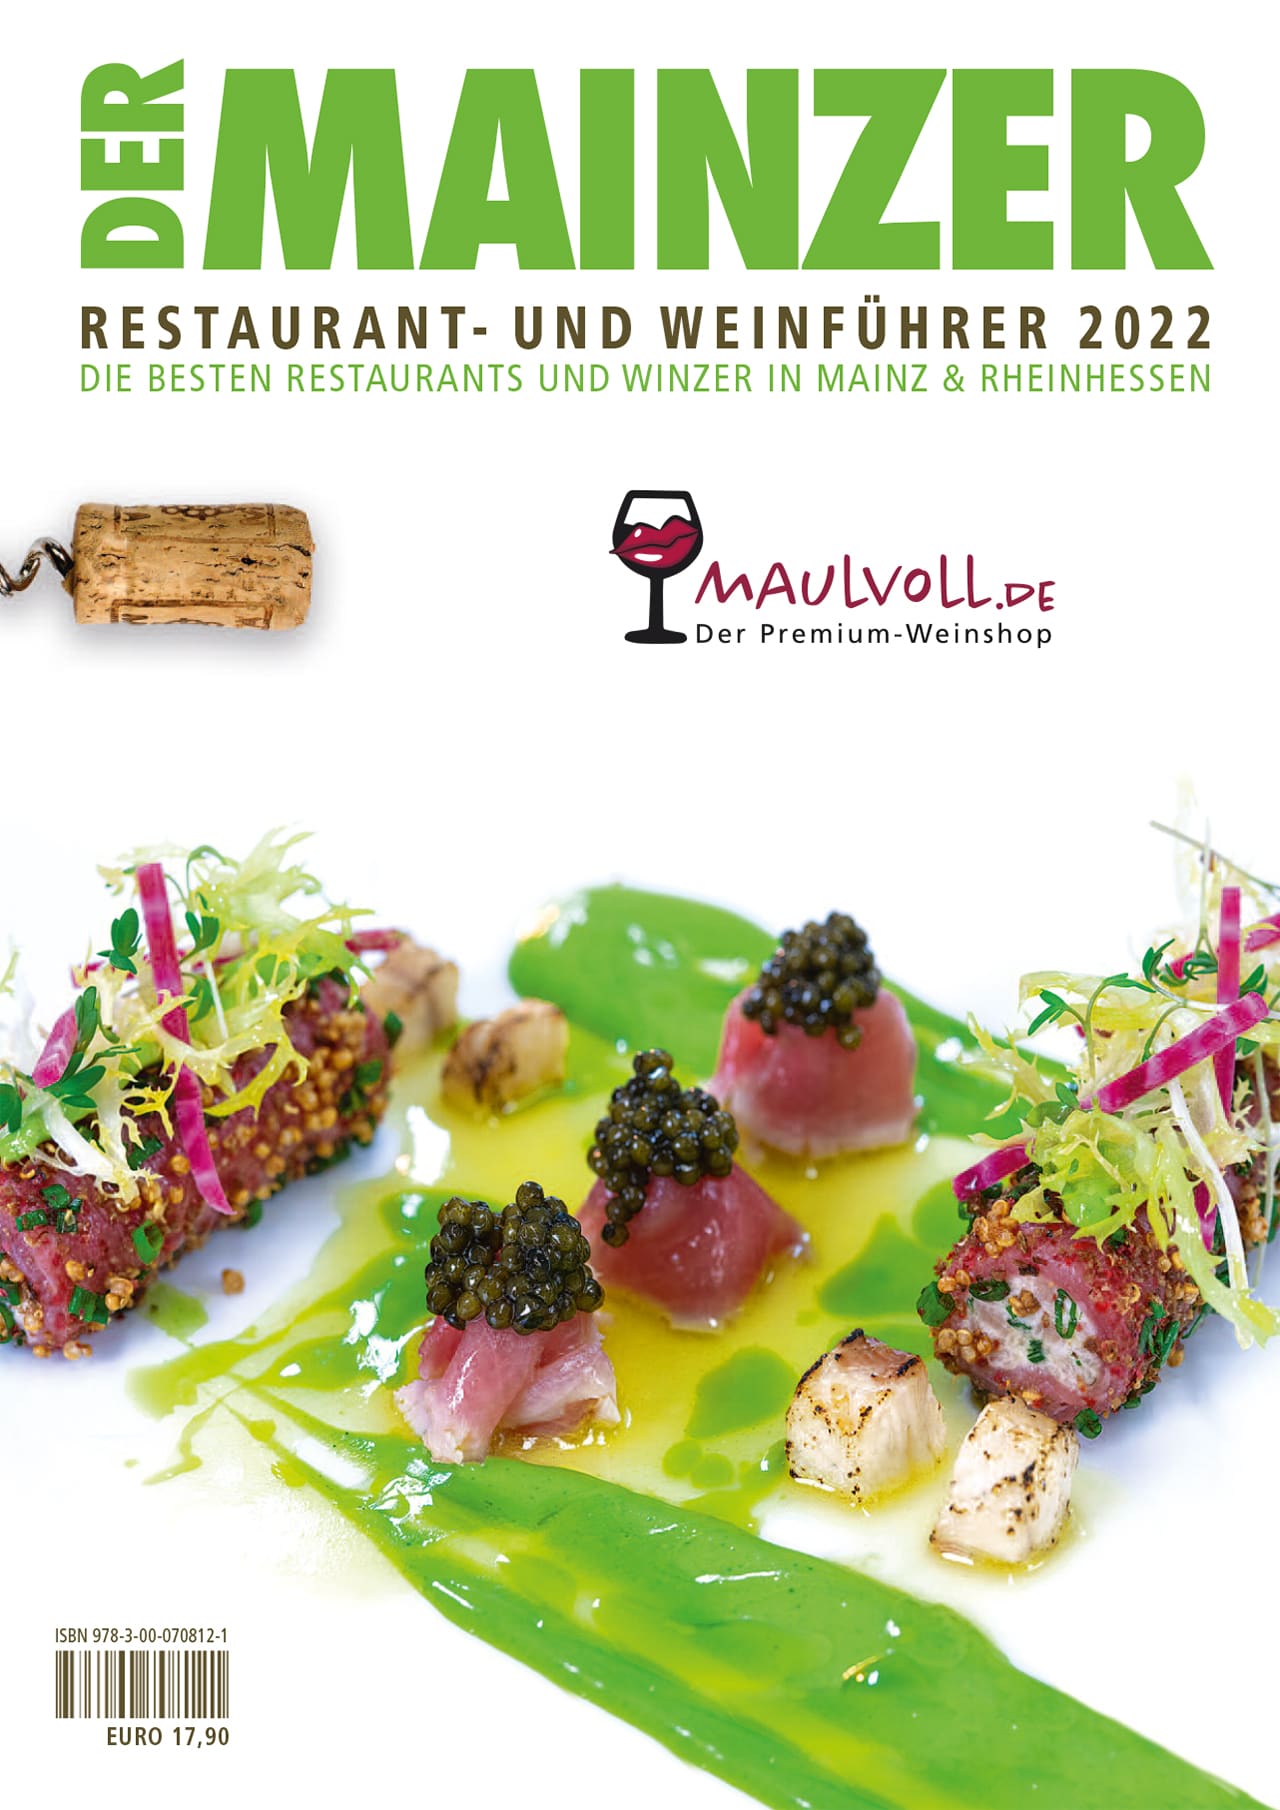 Der Mainzer – Restaurant- und Weinführer 2022 – Magazintitel